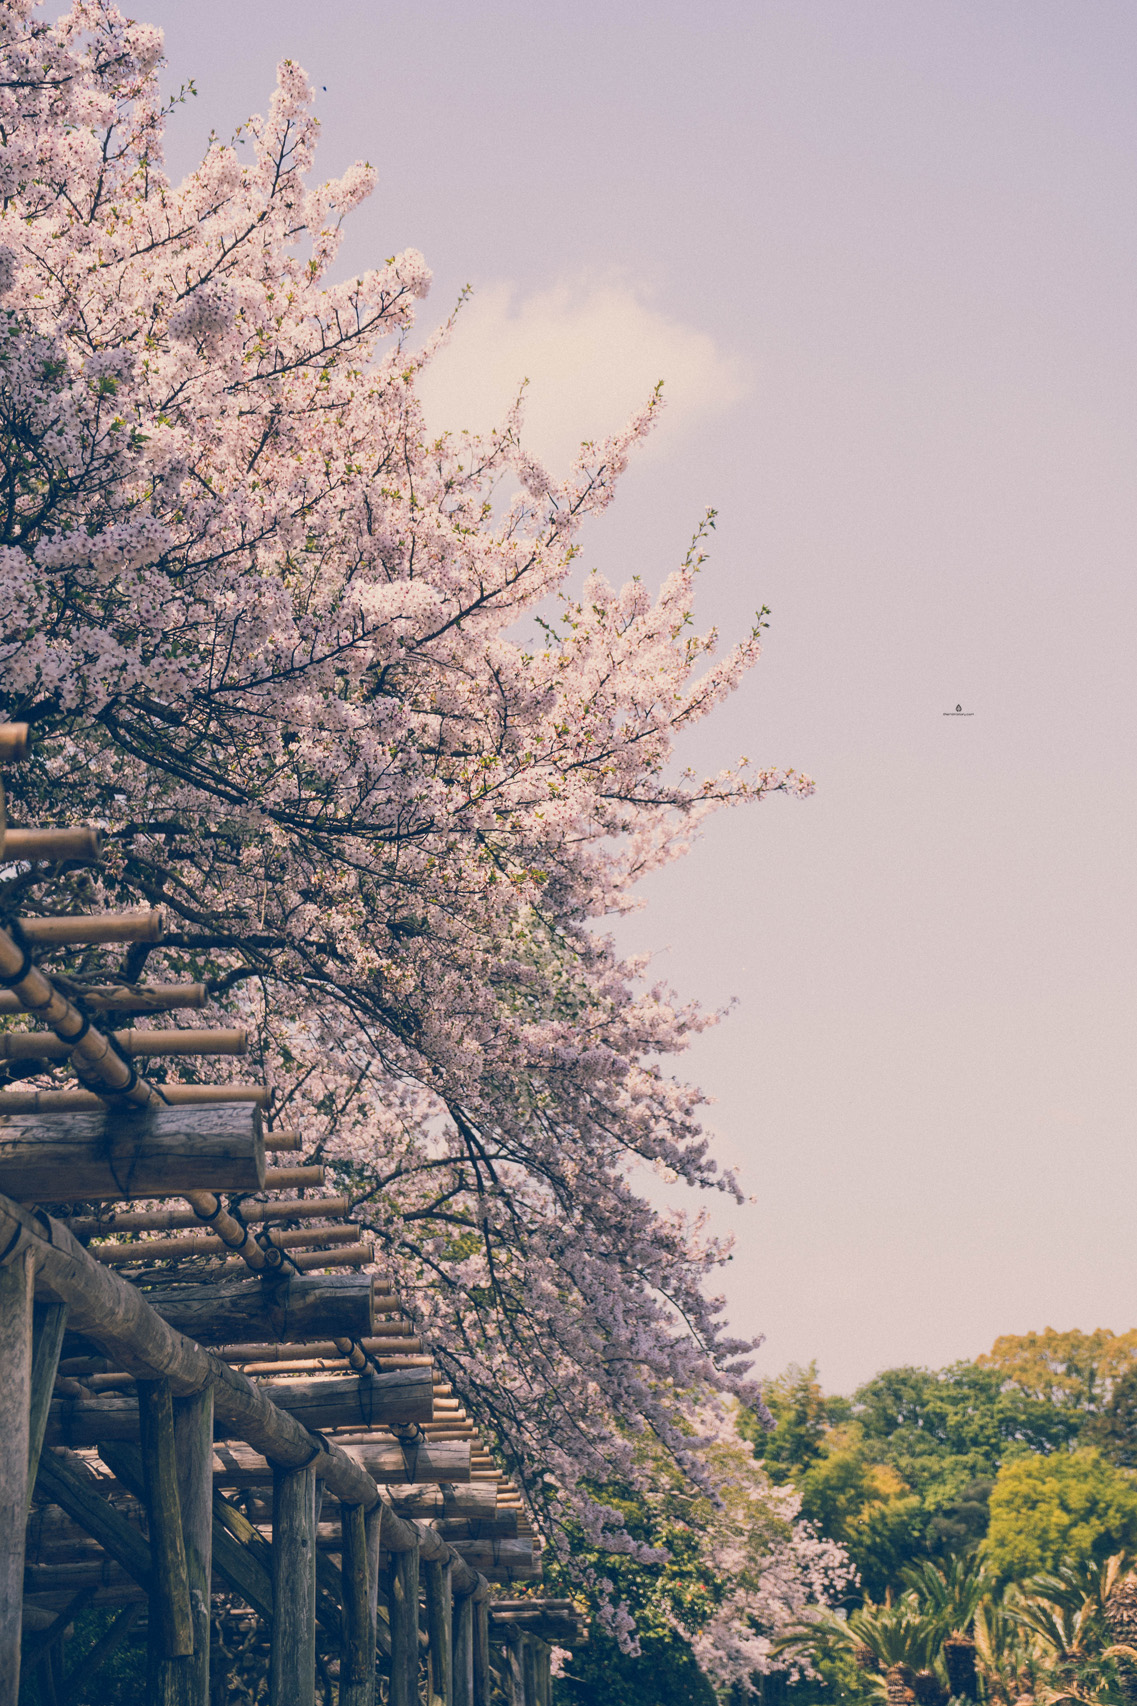 Cherry blossoms in Korakuen garden, Okayama